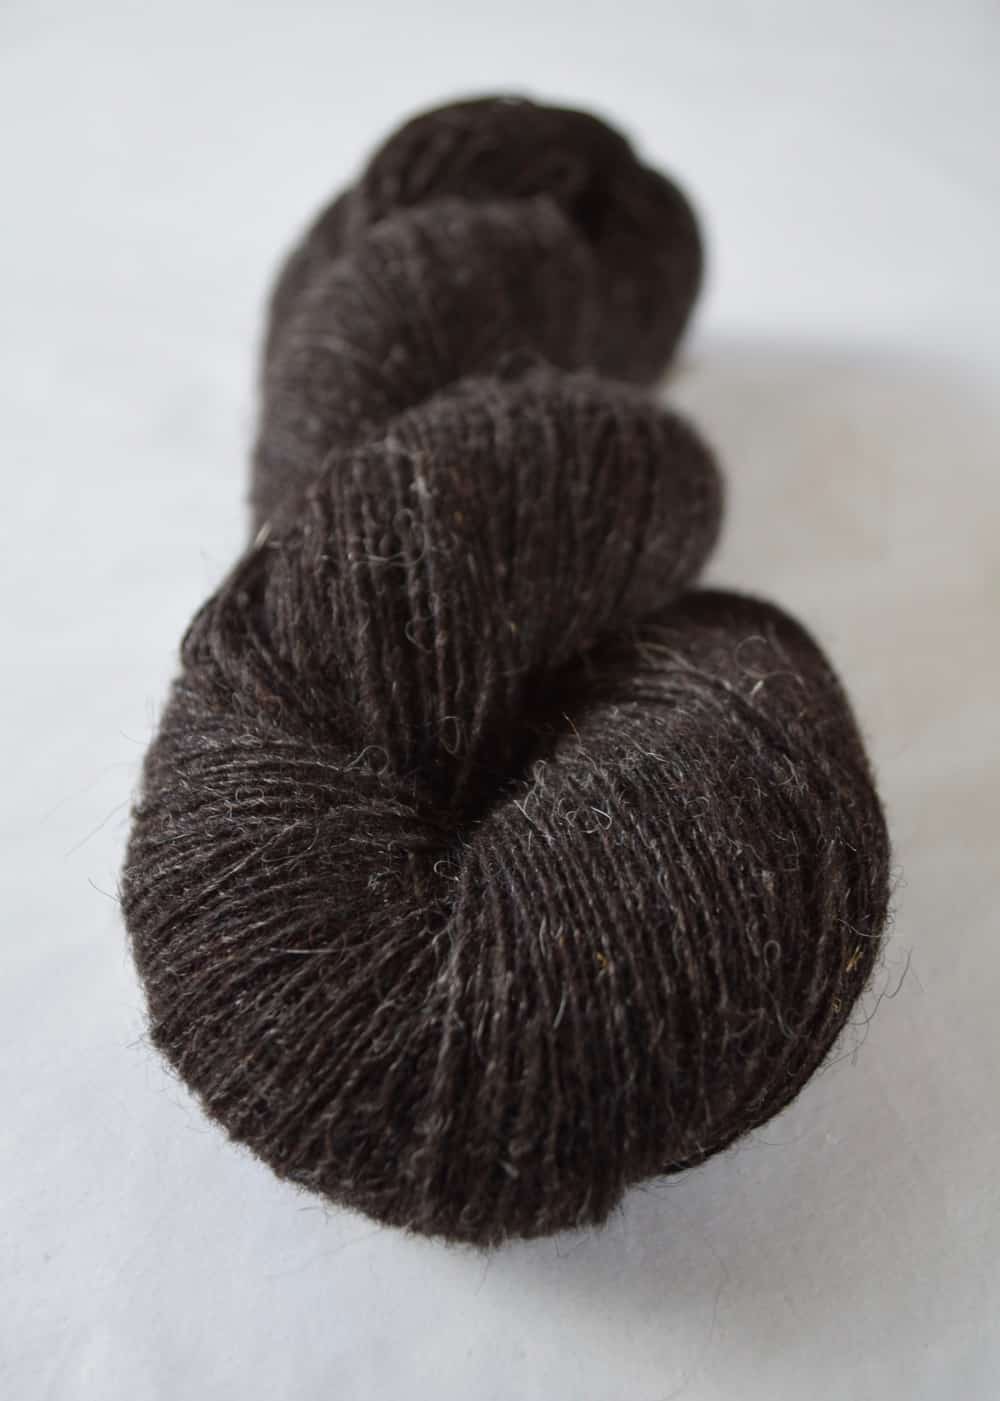 A skein of dark brown yarn.